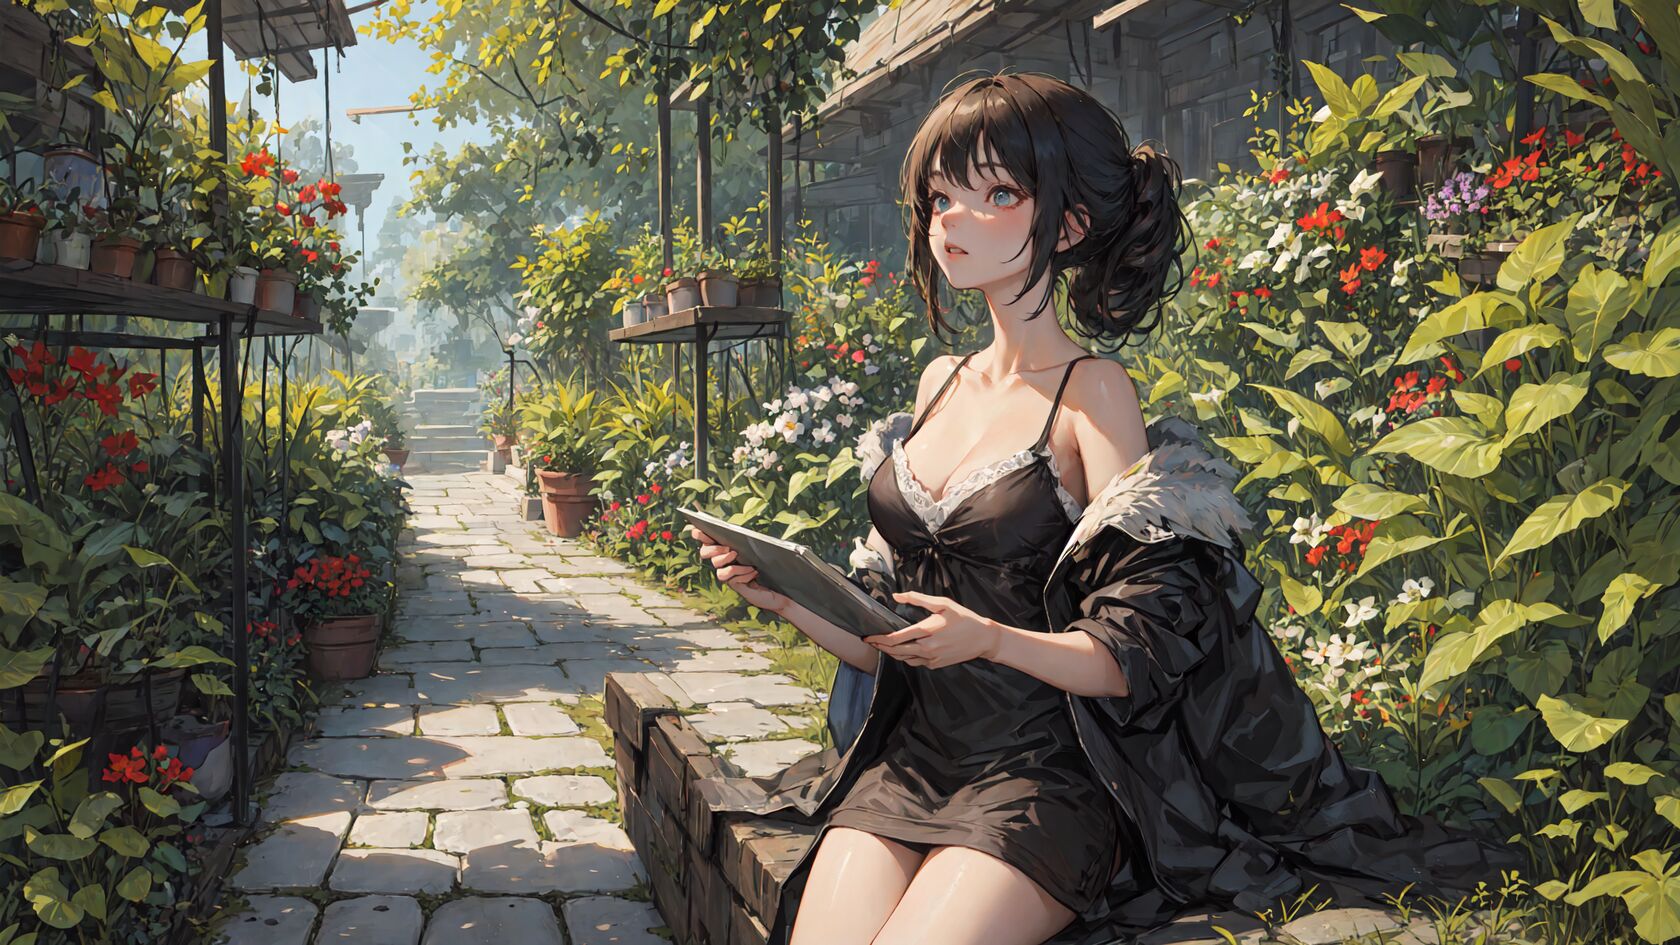 喜爱花花草草的性感黑色吊带睡裙AI动漫美女在阳光明媚花圃静坐壁纸图片第1张图片